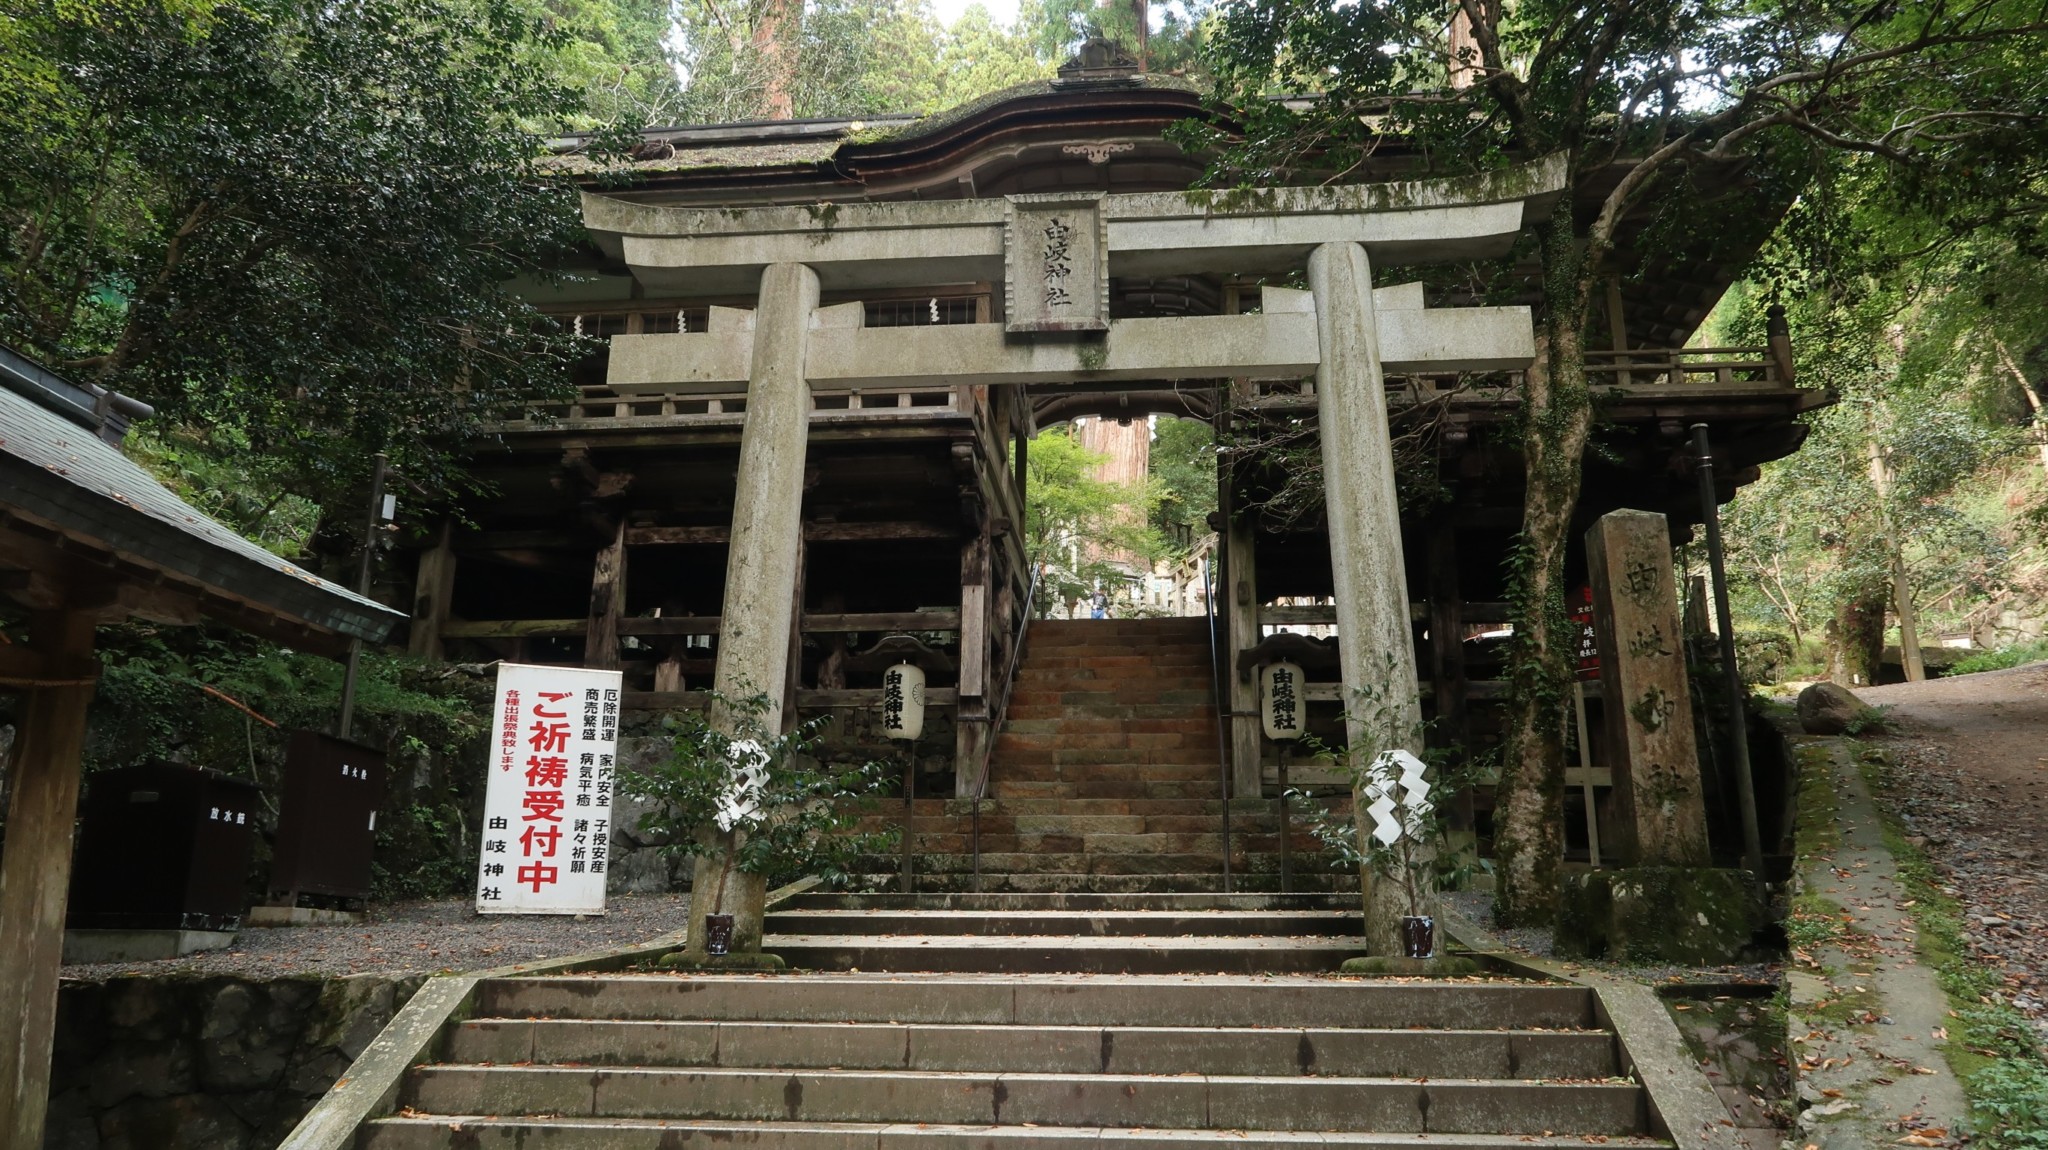 Tempelanlagen, etwas ausserhalb von Kyoto